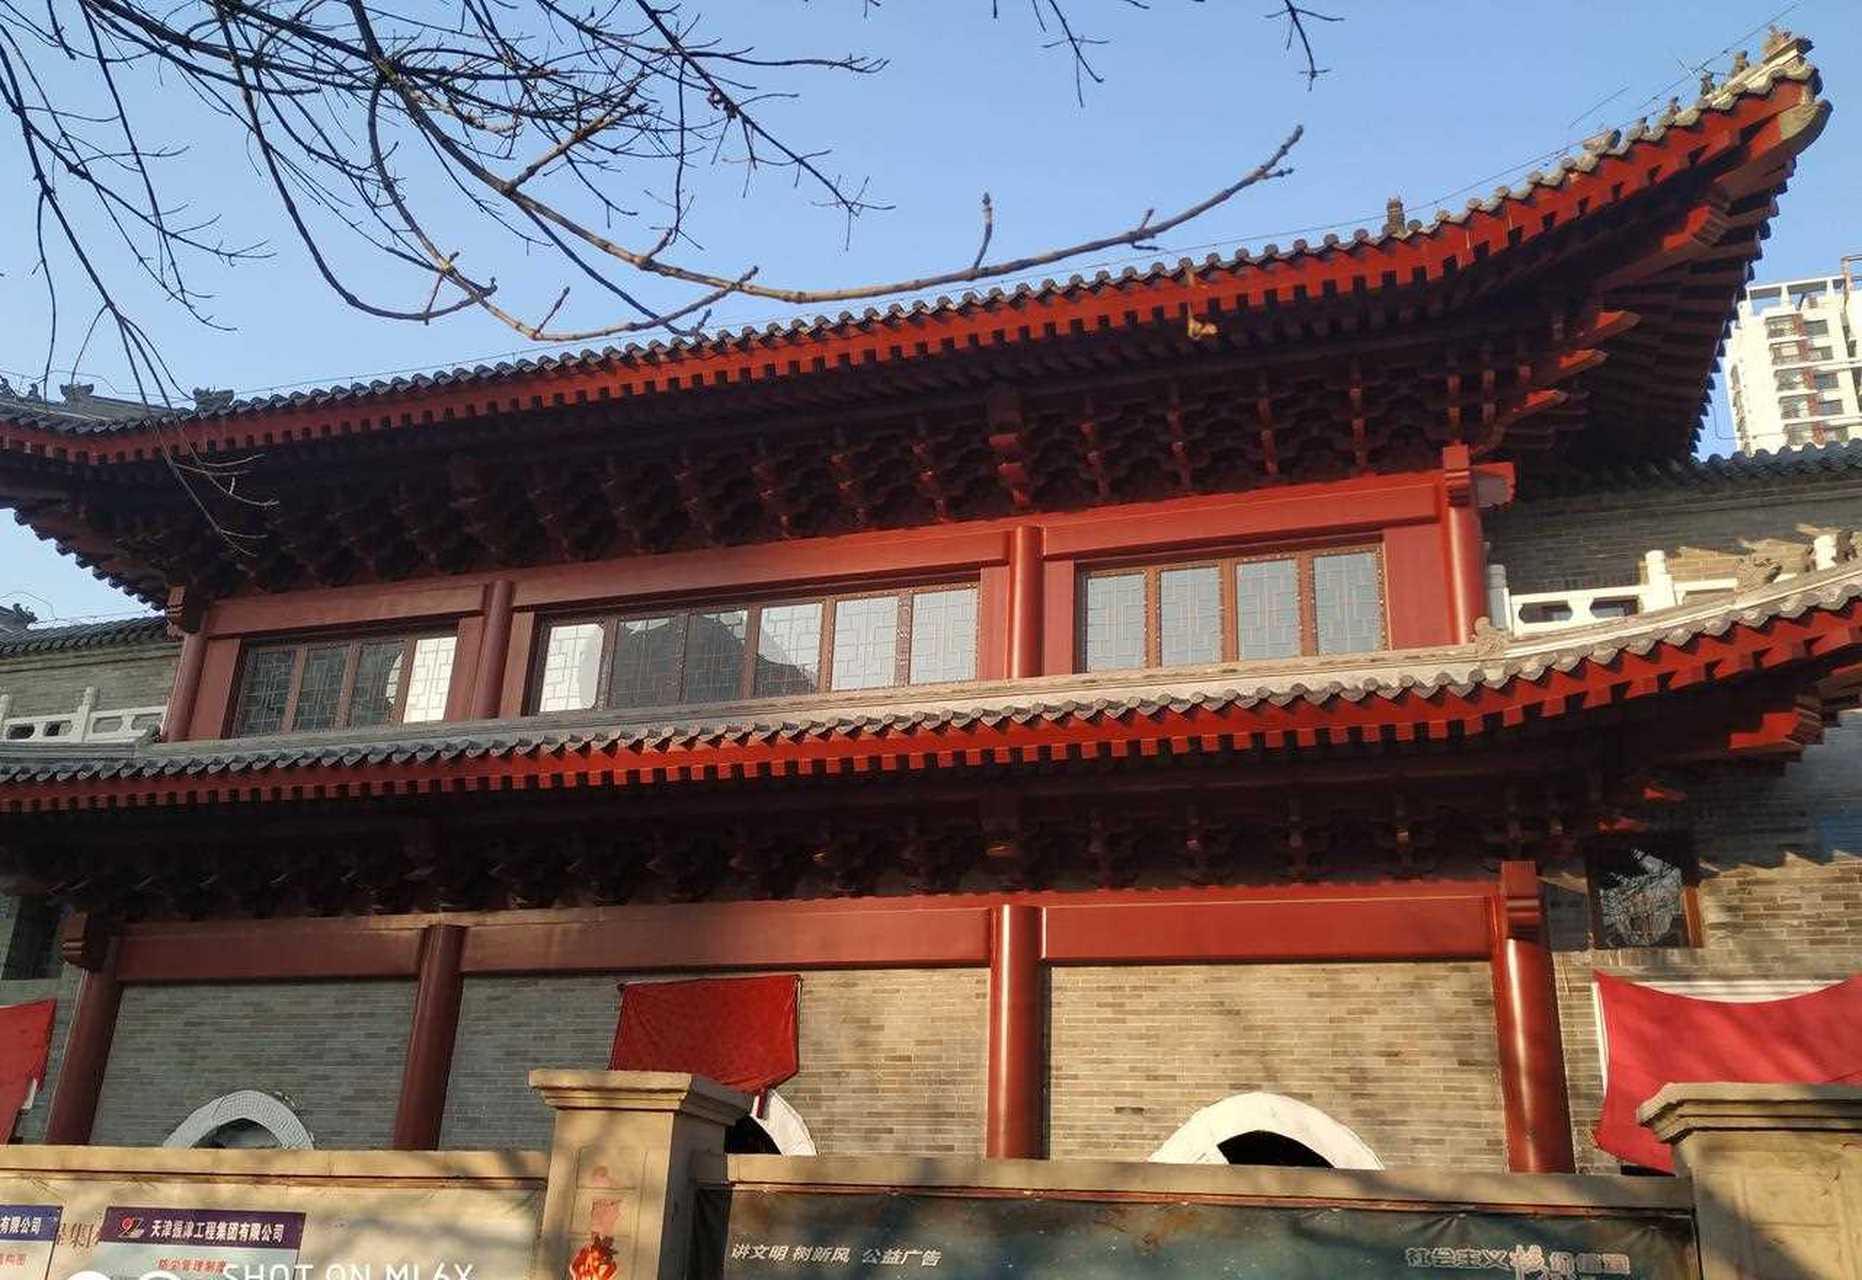 天津市和平区升安大街有座始建于民国时期的莲宗寺,是解放时天津唯一